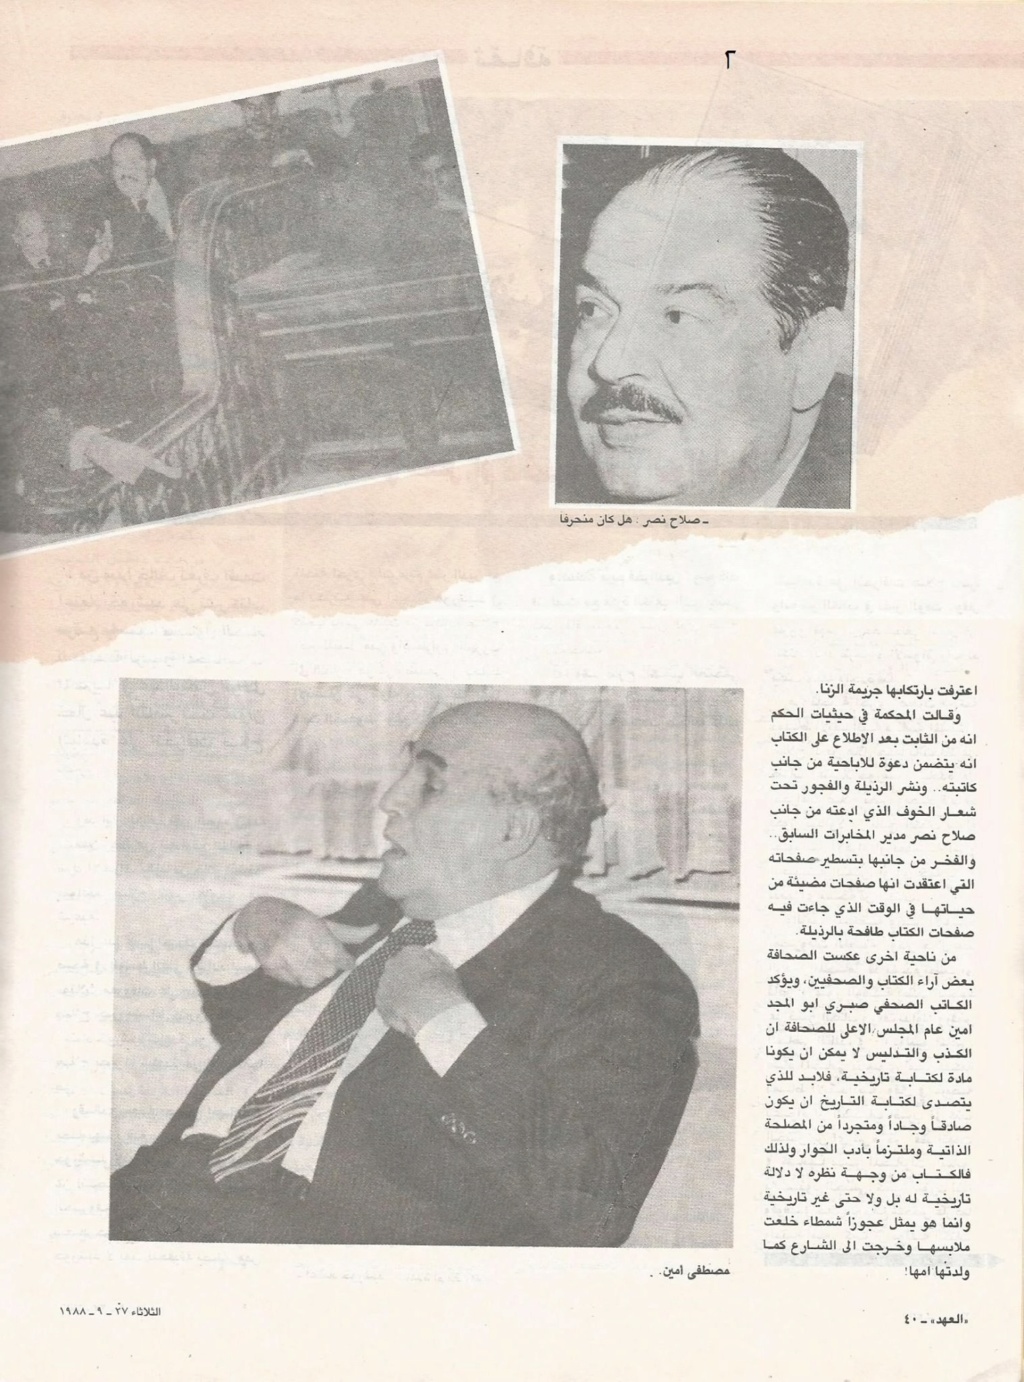 1988 - مقال صحفي : سعاد حسني ترفع دعوى ضد اعتماد خورشيد 1988 م 2225